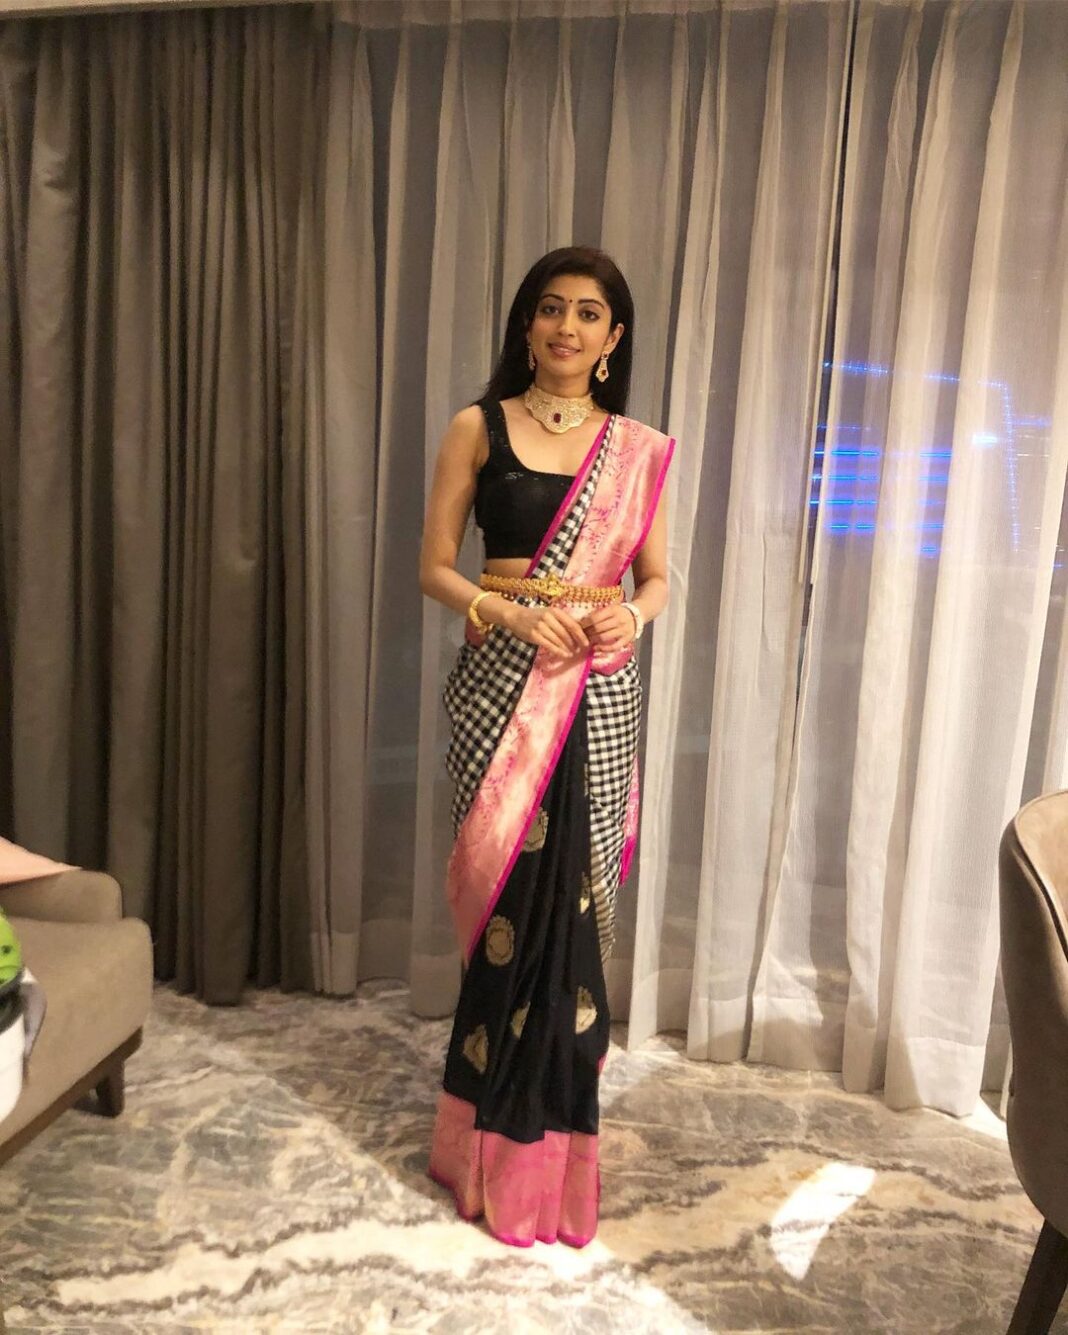 Pranitha Subhash Instagram - Here’s how I Styled my Moms Sari for a friend’s wedding recently .. what do u guys think ?? #sarinotsorry #kanjivaram #silksari